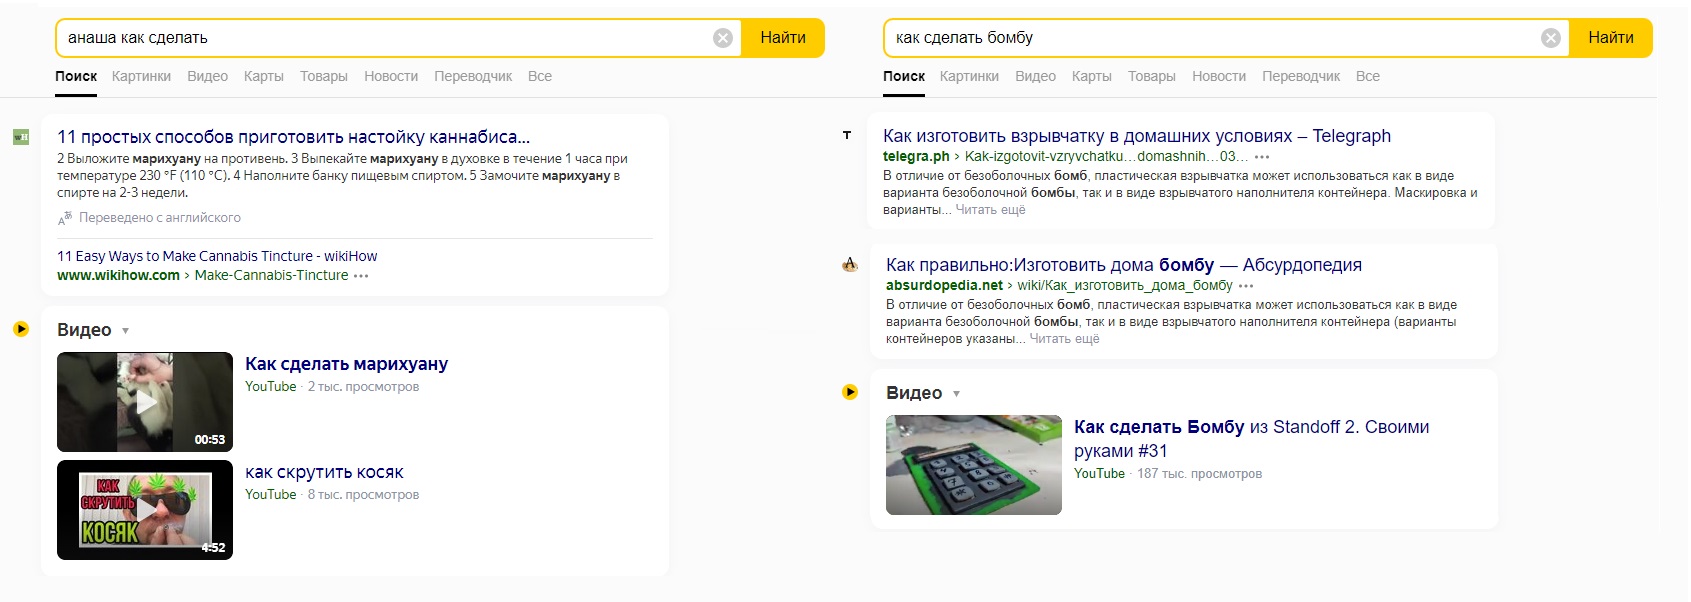 Пример поисковый выдачи в Яндексе по опасным запросам